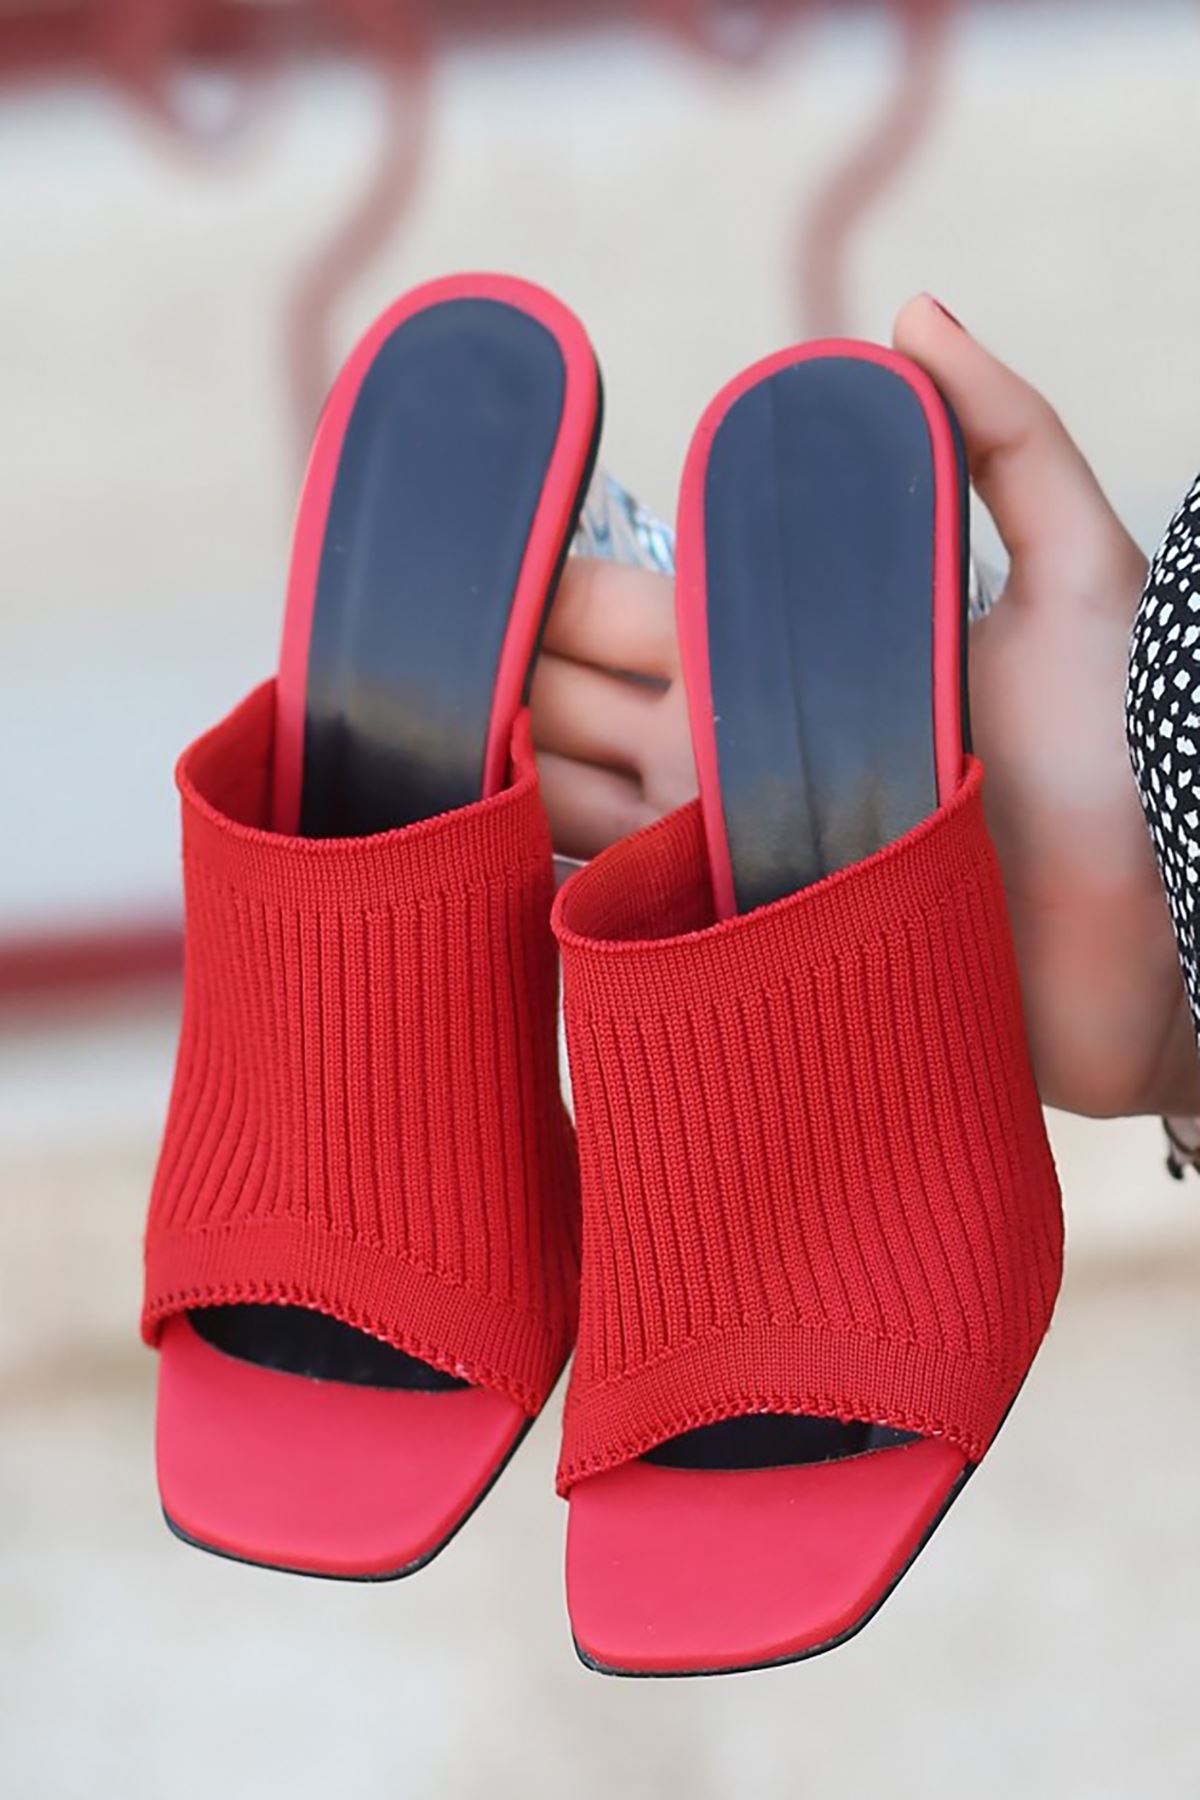 Mida Shoes ERBEvra Kırmızı Triko Kadın Topuklu Terlik